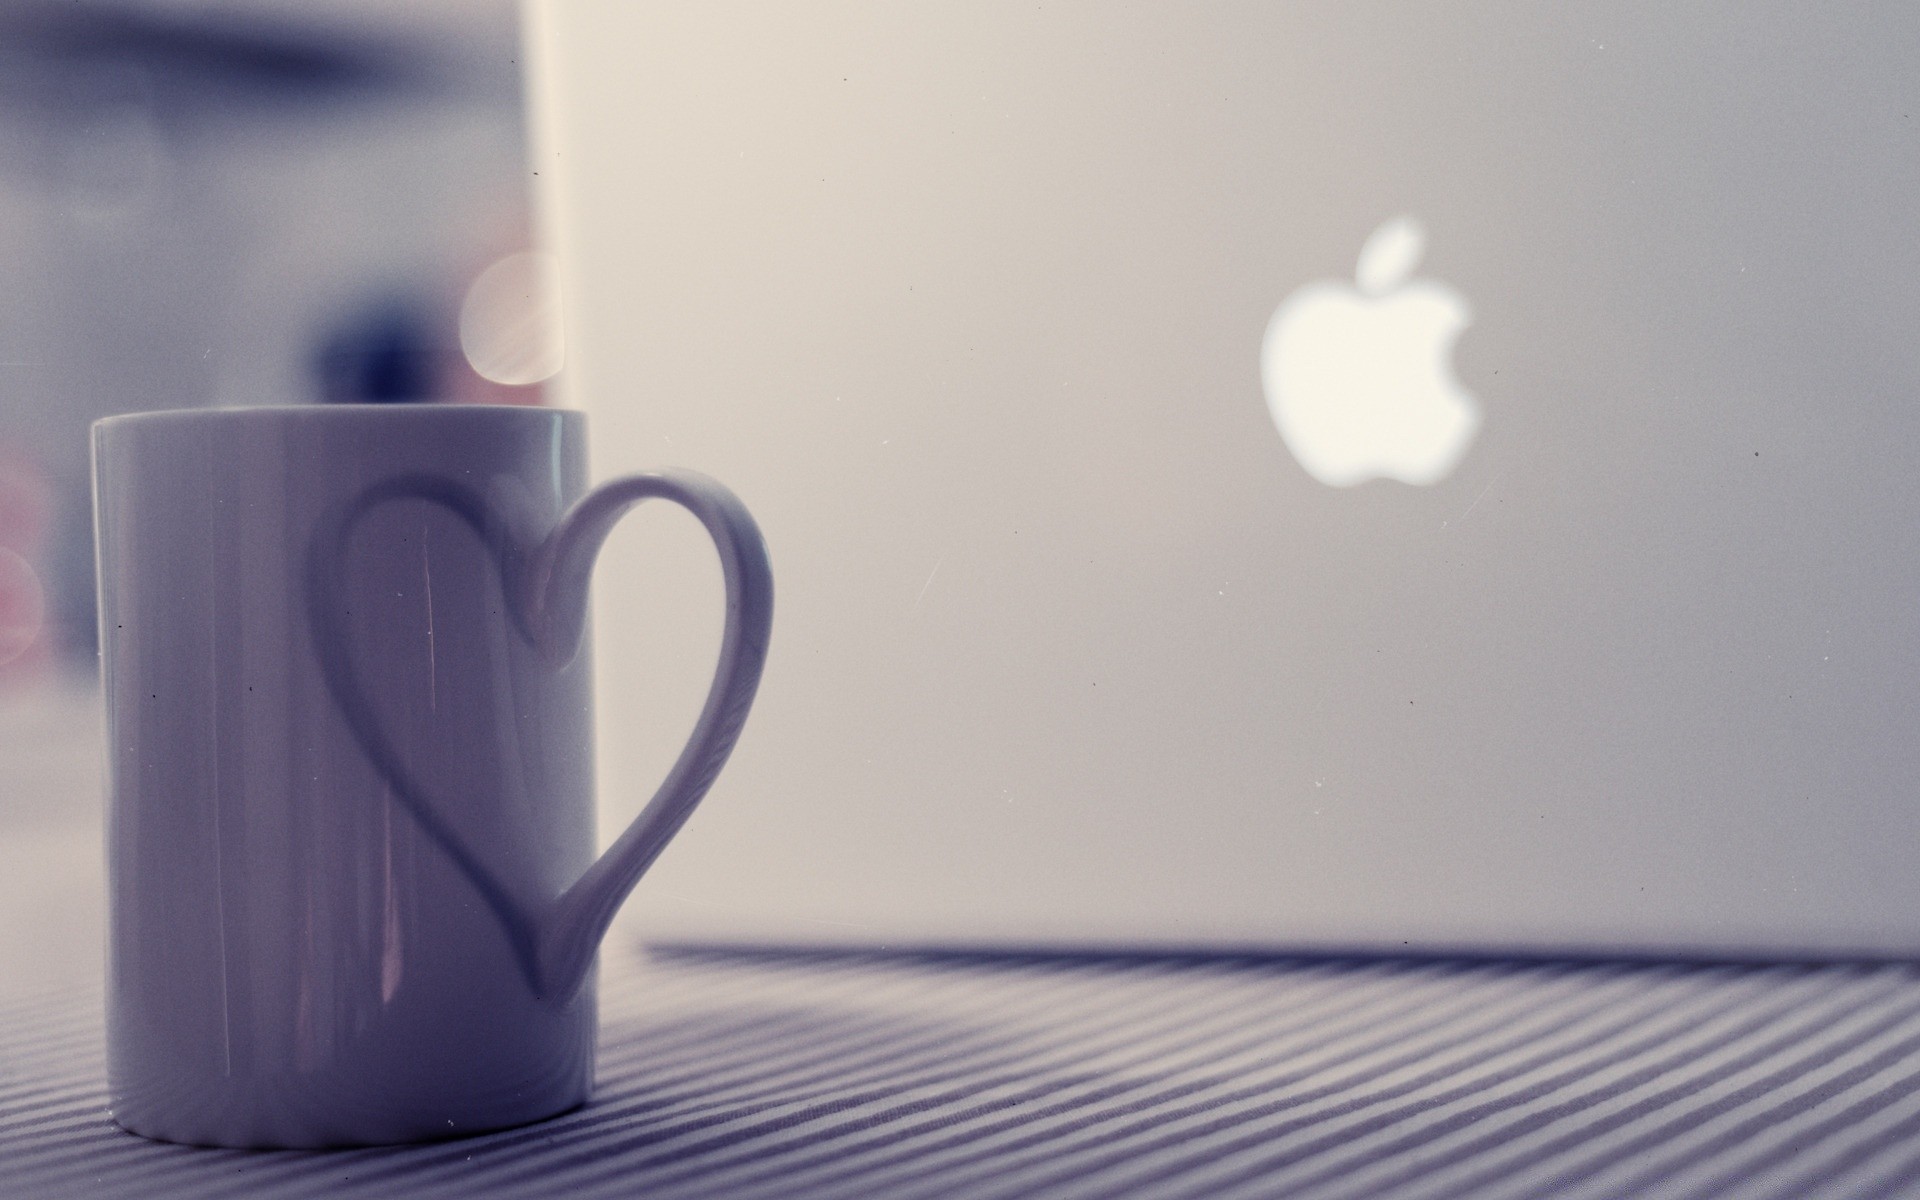 mac coffee cup drink desktop mug espresso tea abstract empty still life dawn cappuccino design tableware color